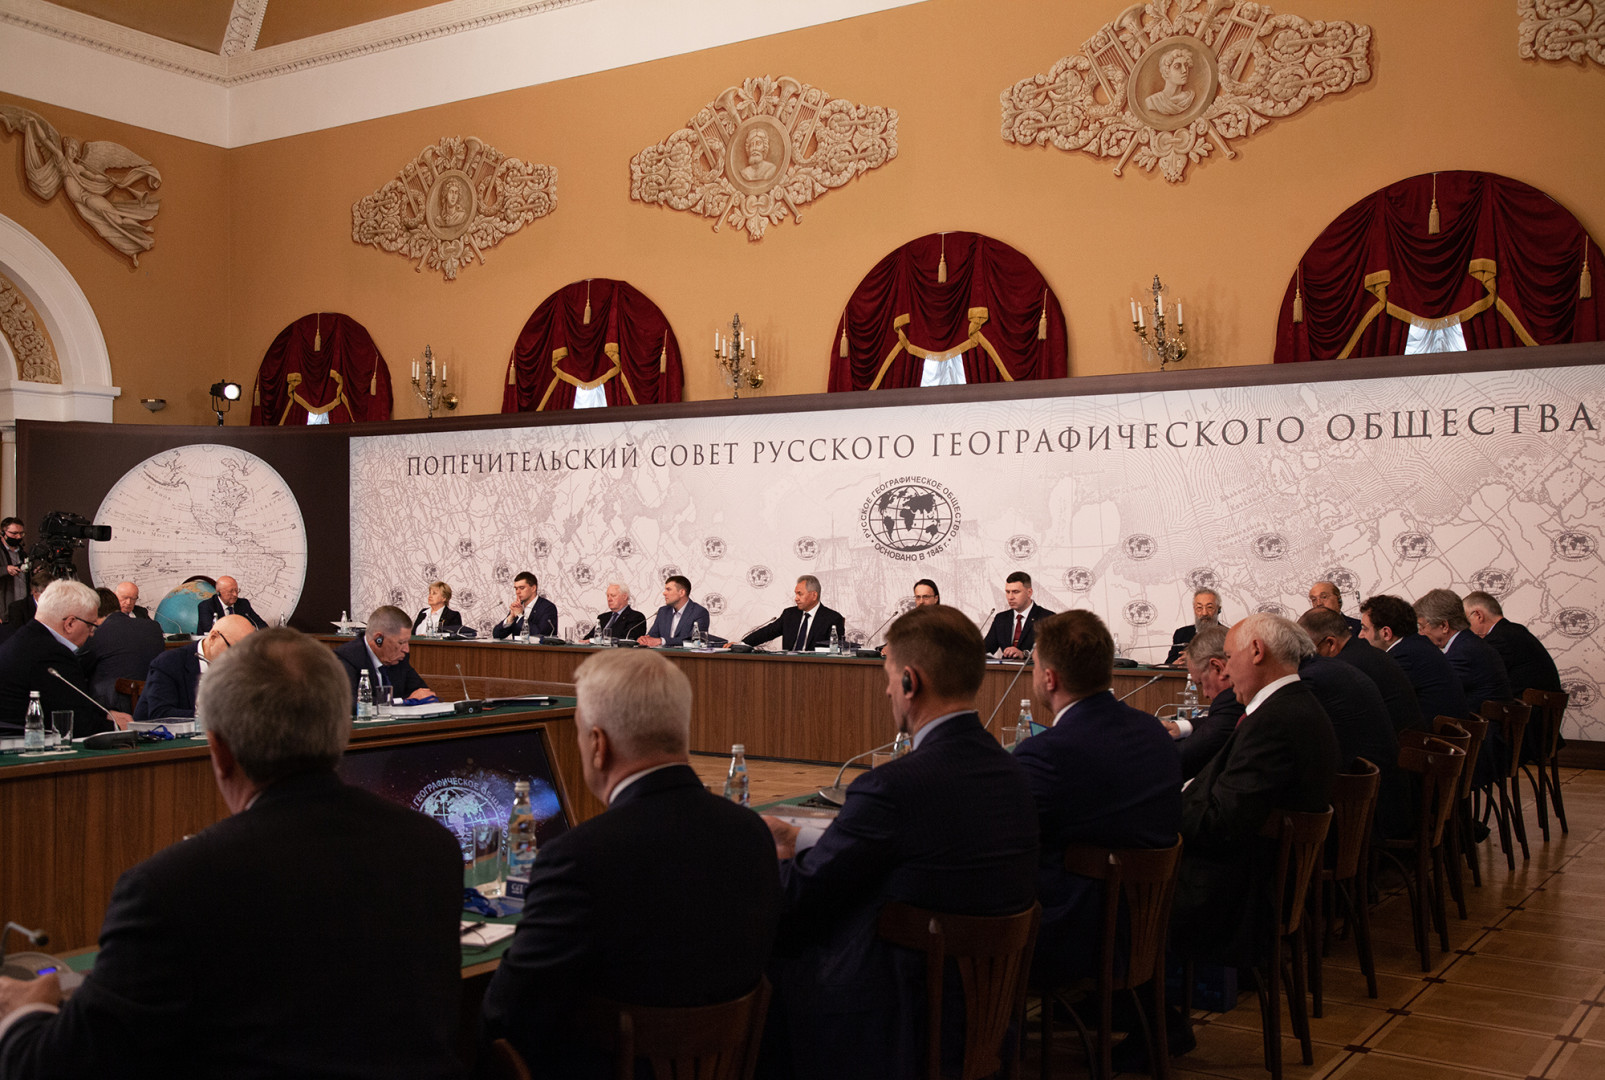 Заседание Попечительского Совета Русского географического общества 2021